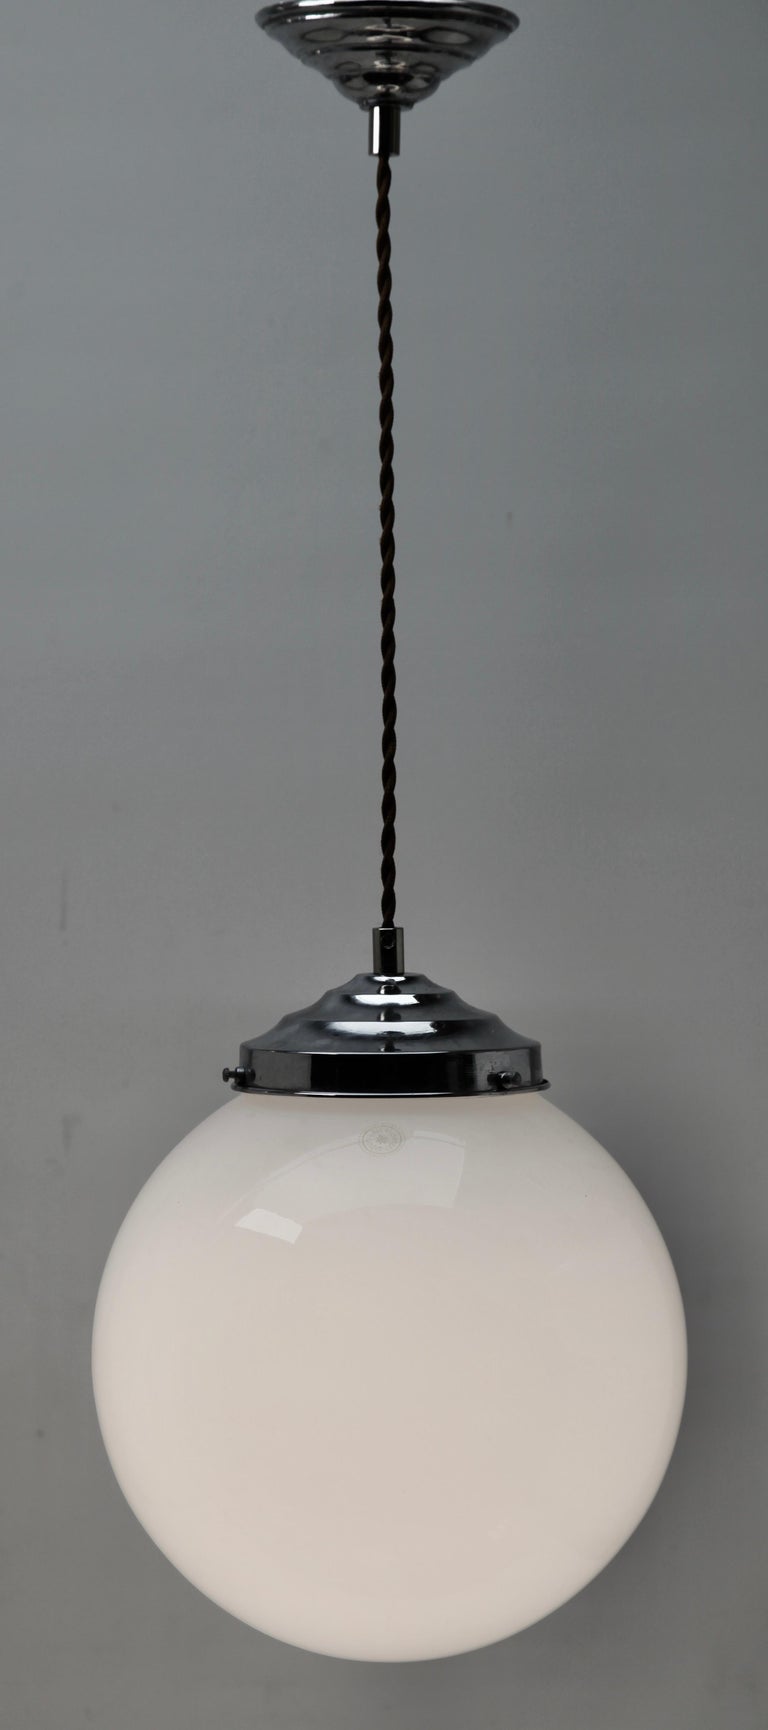 Art Deco Pair of Ceiling Lamps, Val Saint-Lambert Belgium Glass Shade, 1930s For Sale 2